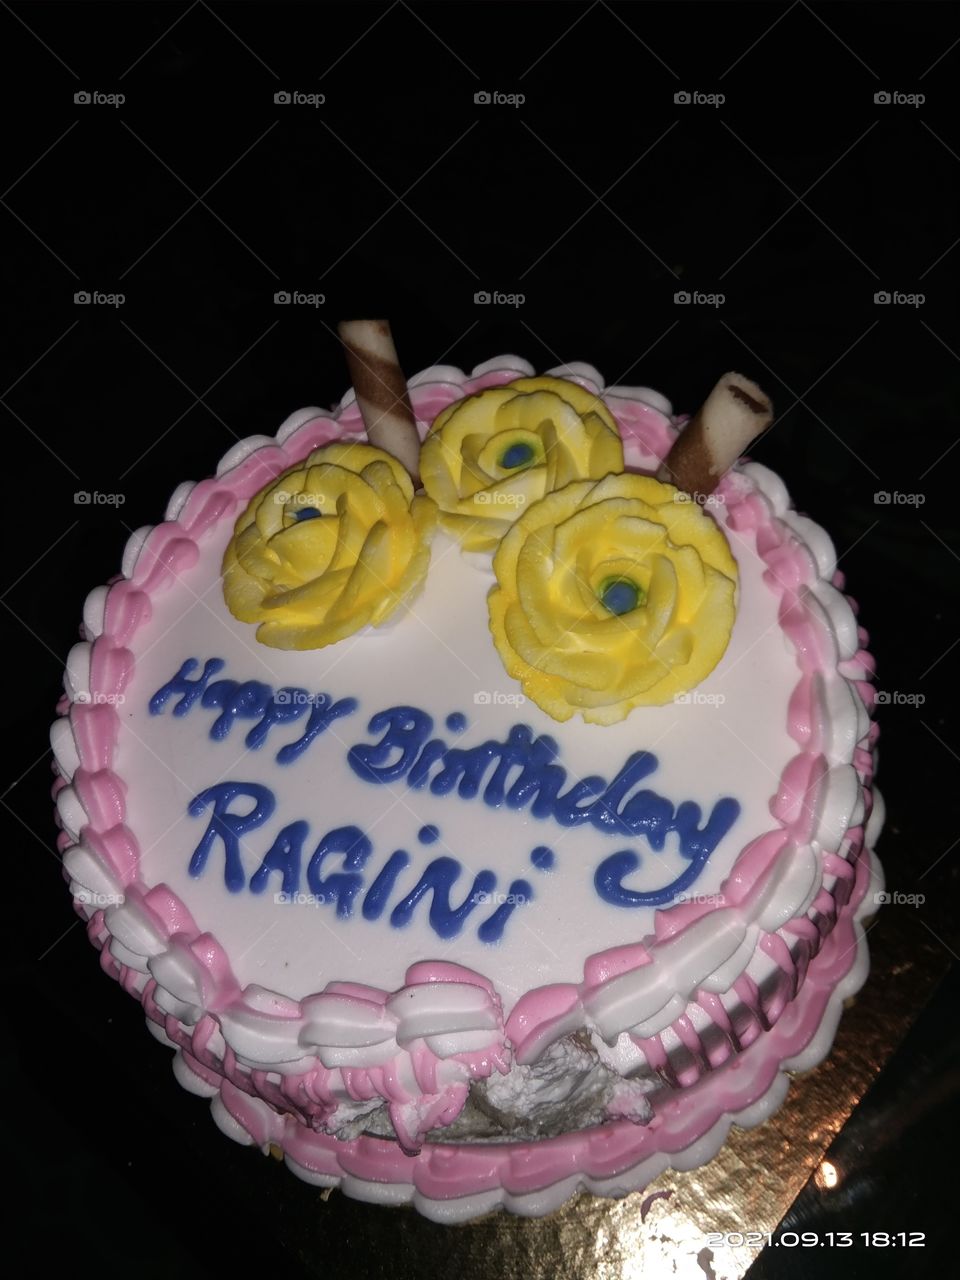 happy birthday Ragini song - Ragini Birthday Video song - Happy birthday to  you Ragini - YouTube